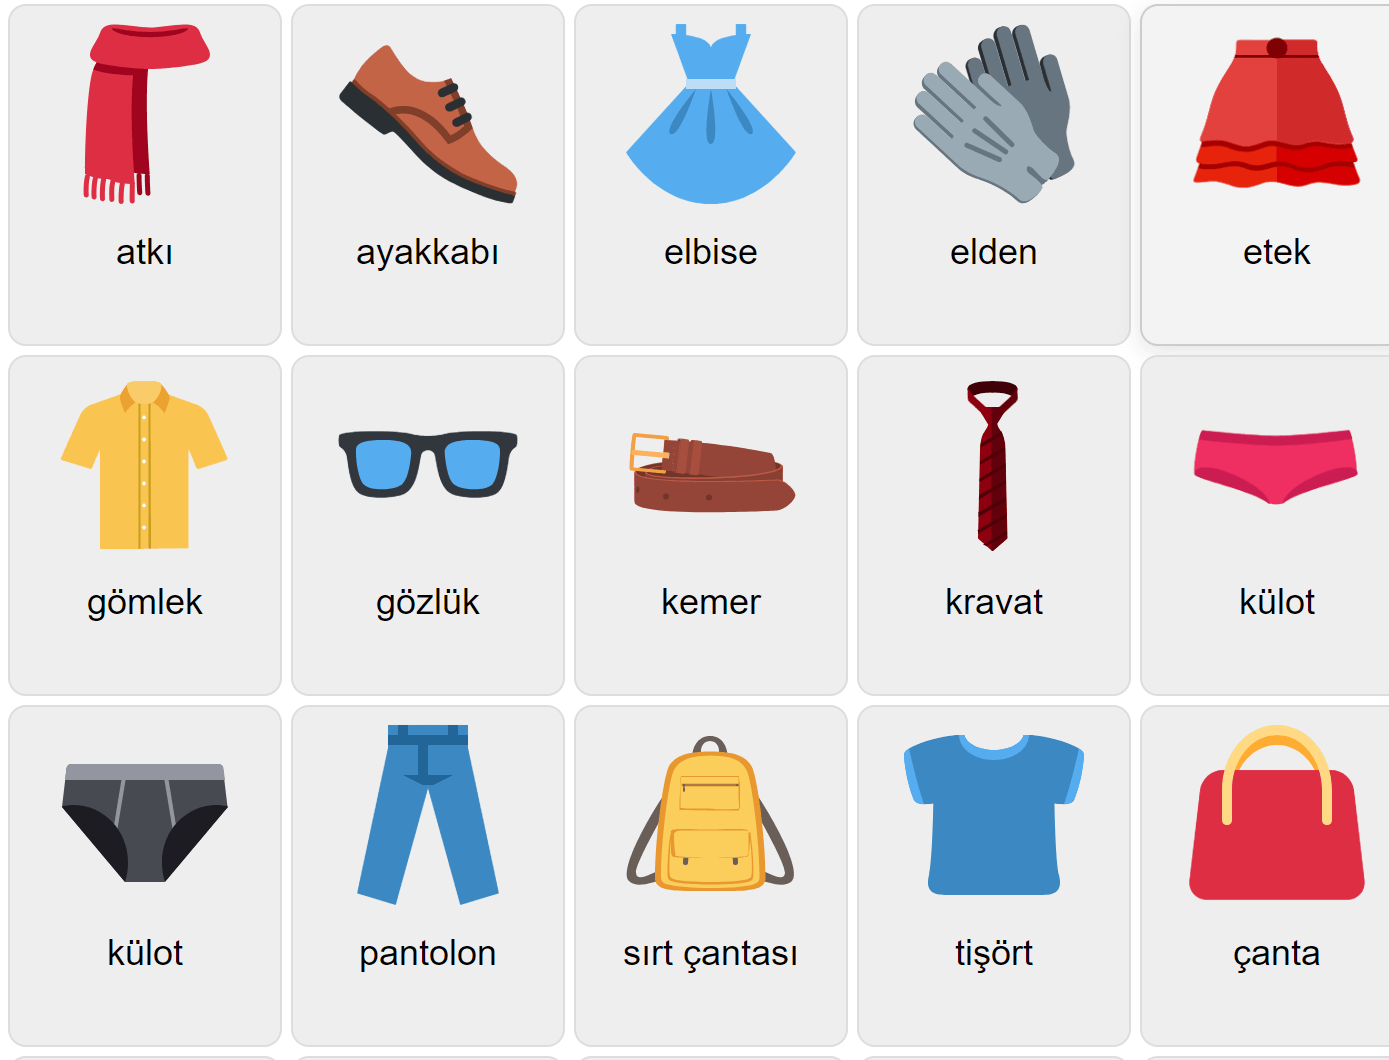 Одежда на турецком языке